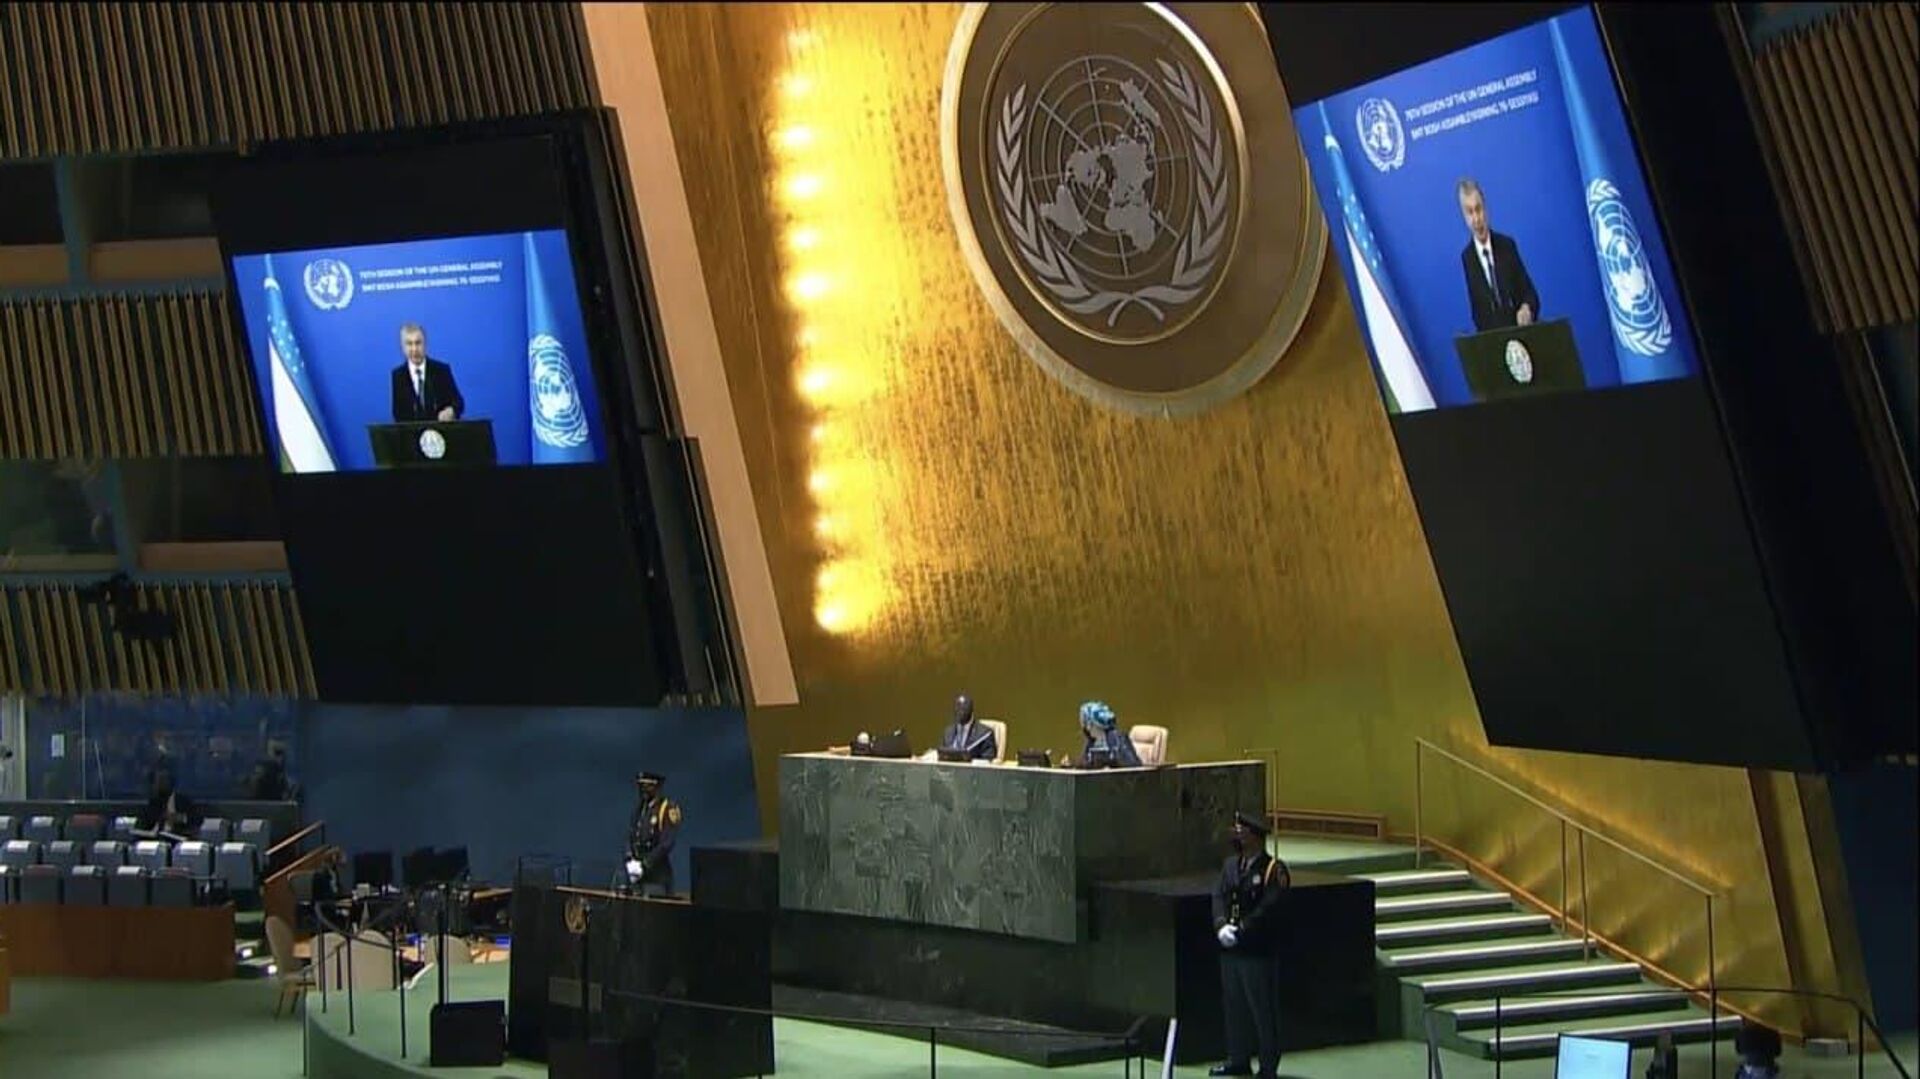 Шавкат Мирзиёев выступил с видеообращением на 76-й сессии Генеральной Ассамблеи ООН - Sputnik Ўзбекистон, 1920, 22.09.2021